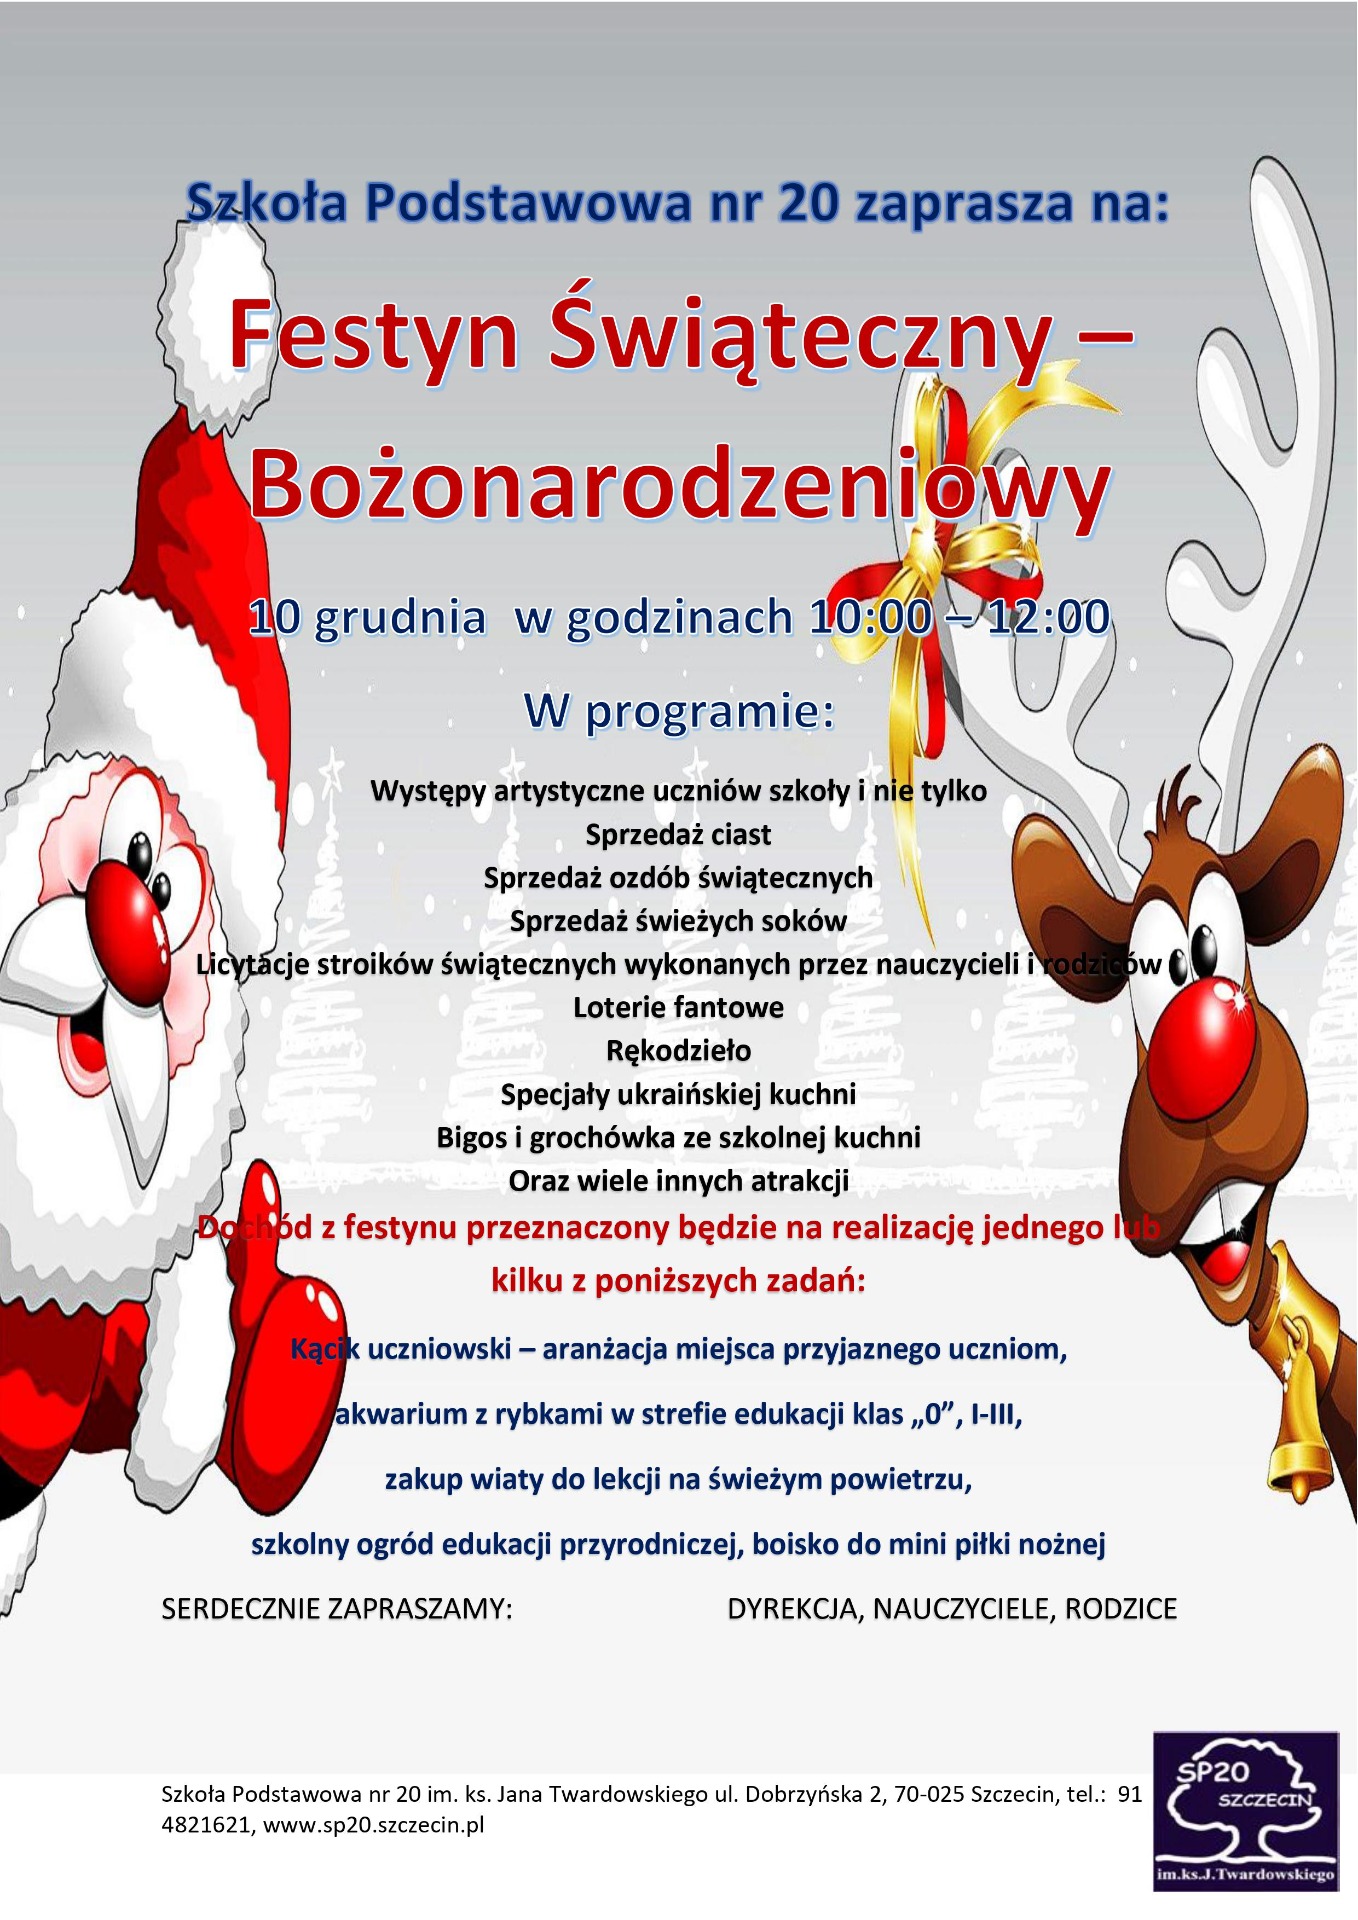 plakat przedstawiający Zaproszenie na festyn świąteczny - bożonarodzeniowy do Szkoły Podstawowej nr 20, który odbędzie się 10 grudnia 2022 roku, 